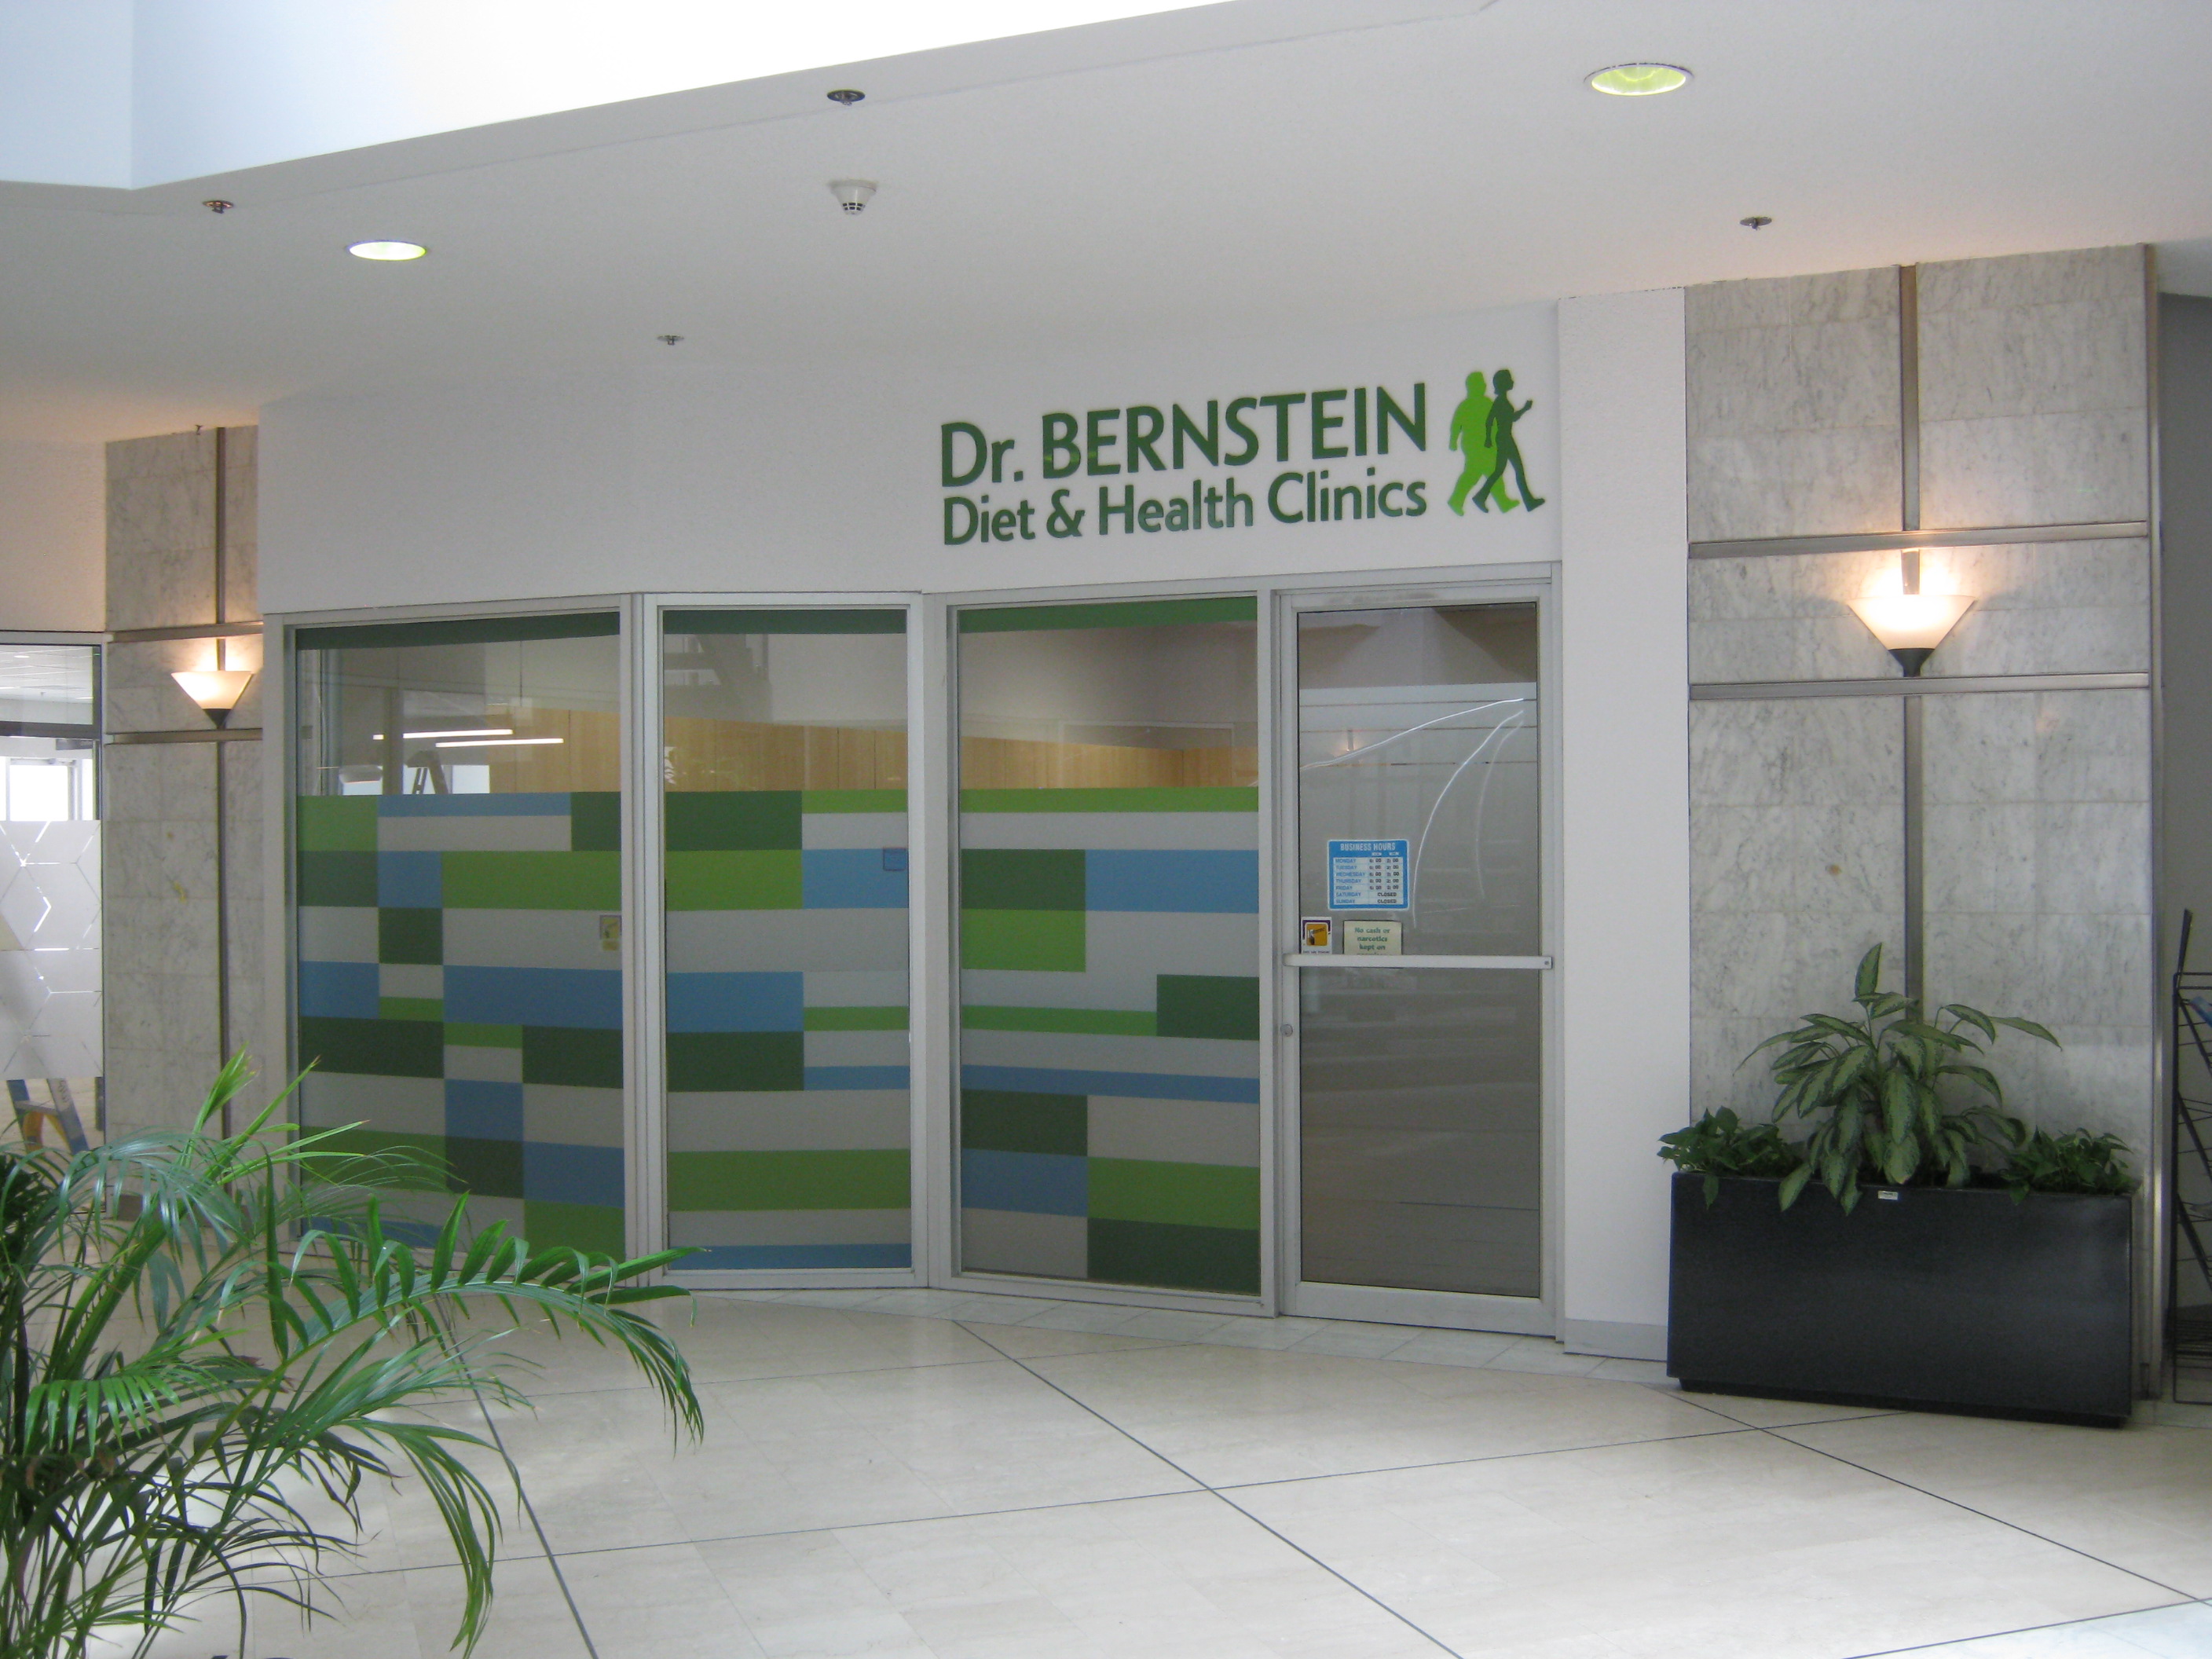 Dr. Bernstein Weight Loss & Diet Clinic, Bank St. - Ottawa, Ontario